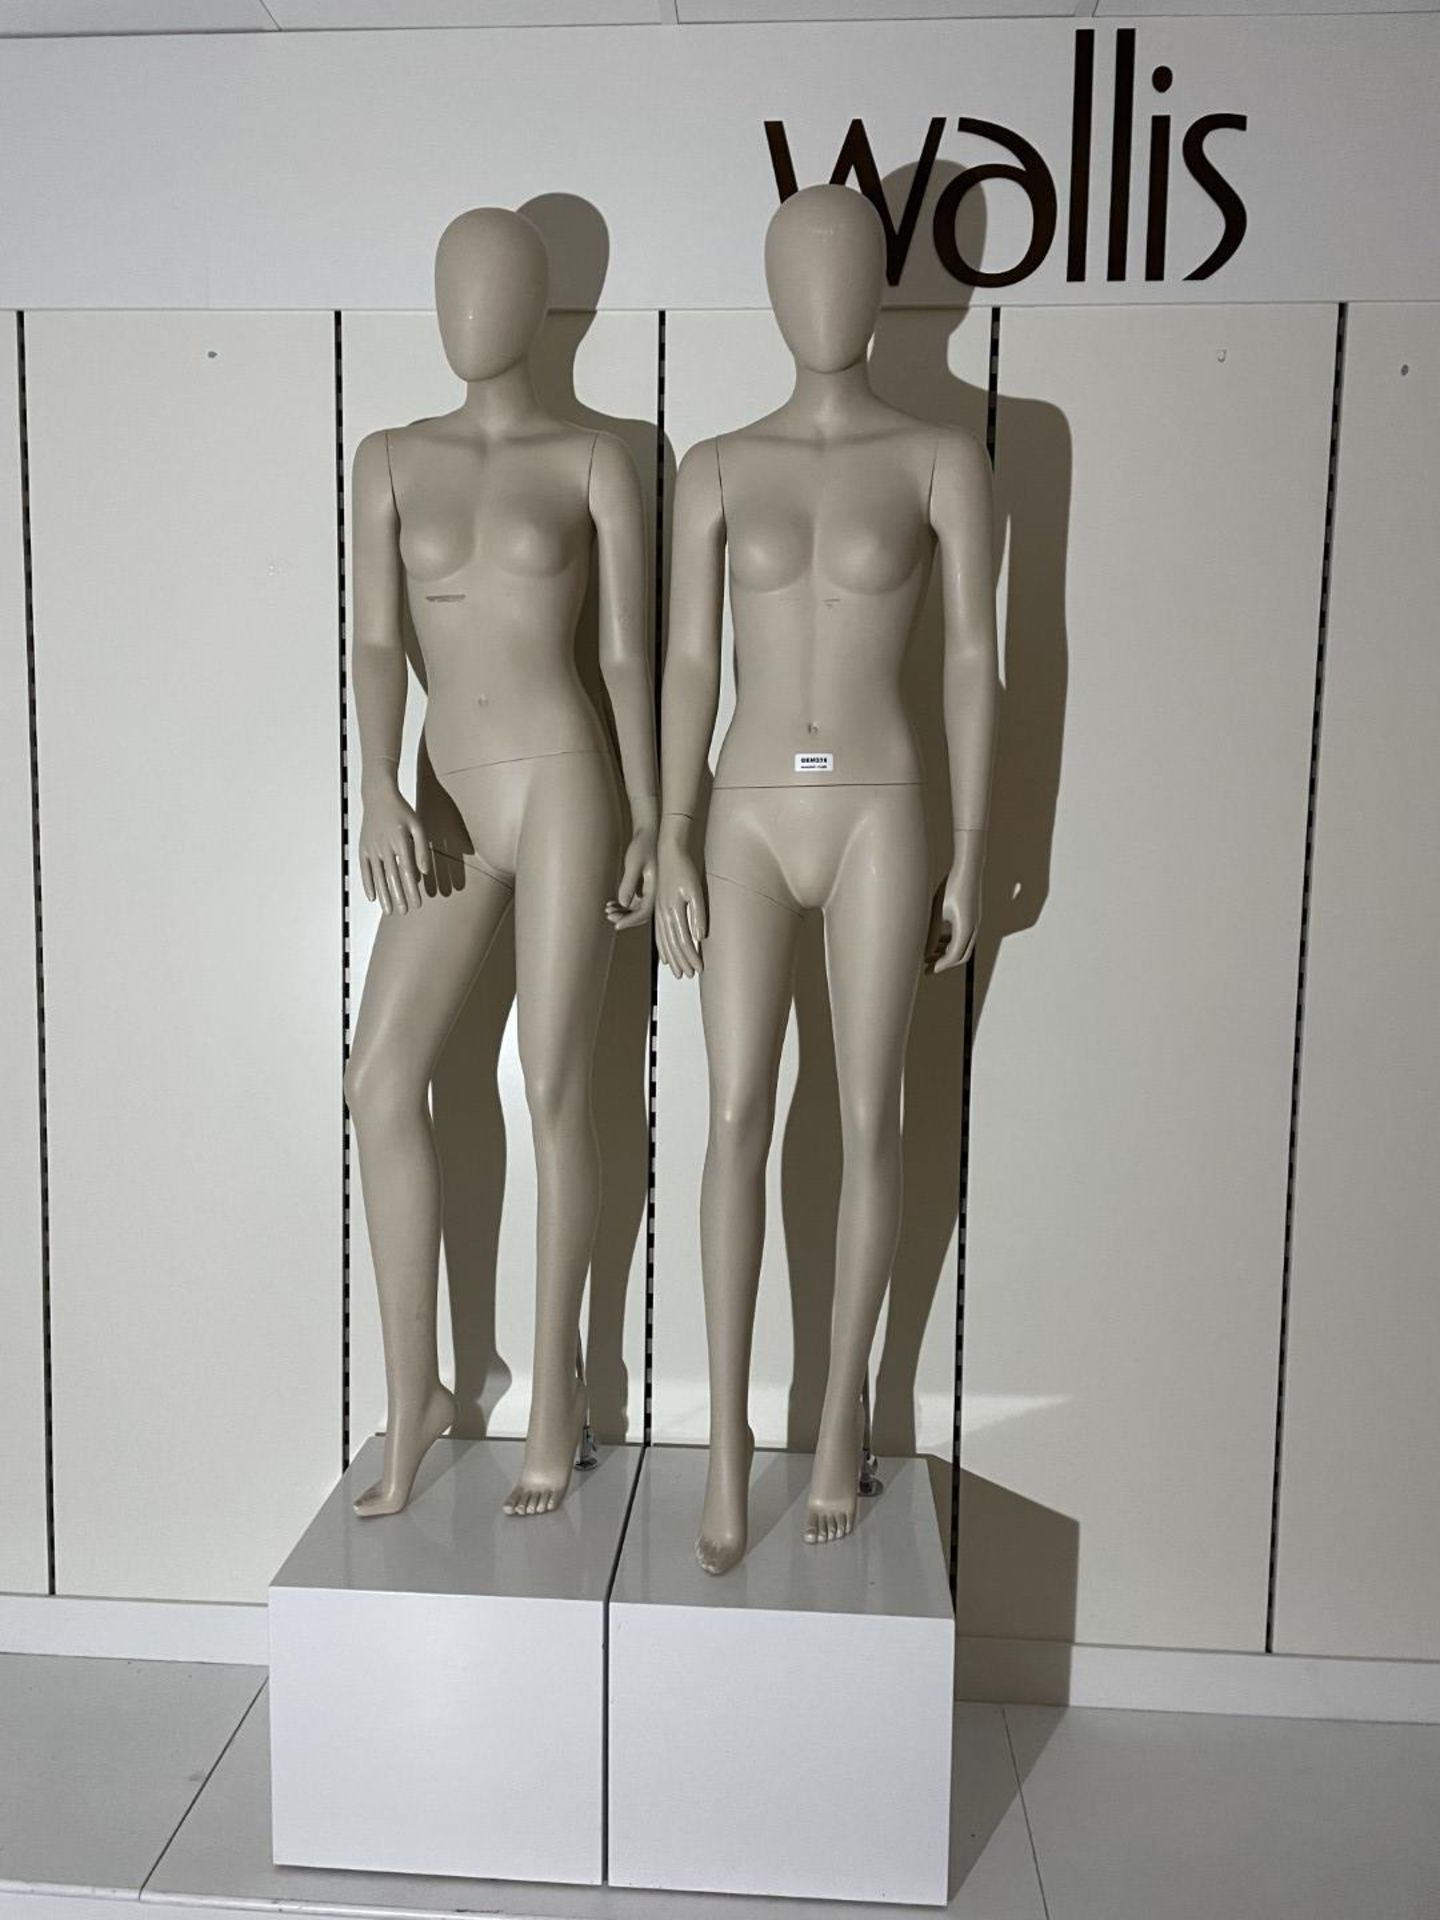 2 x Full Size Female Mannequins on Pedestal Plinth Stands - CL670 - Ref: GEM236 - Location: - Image 2 of 11